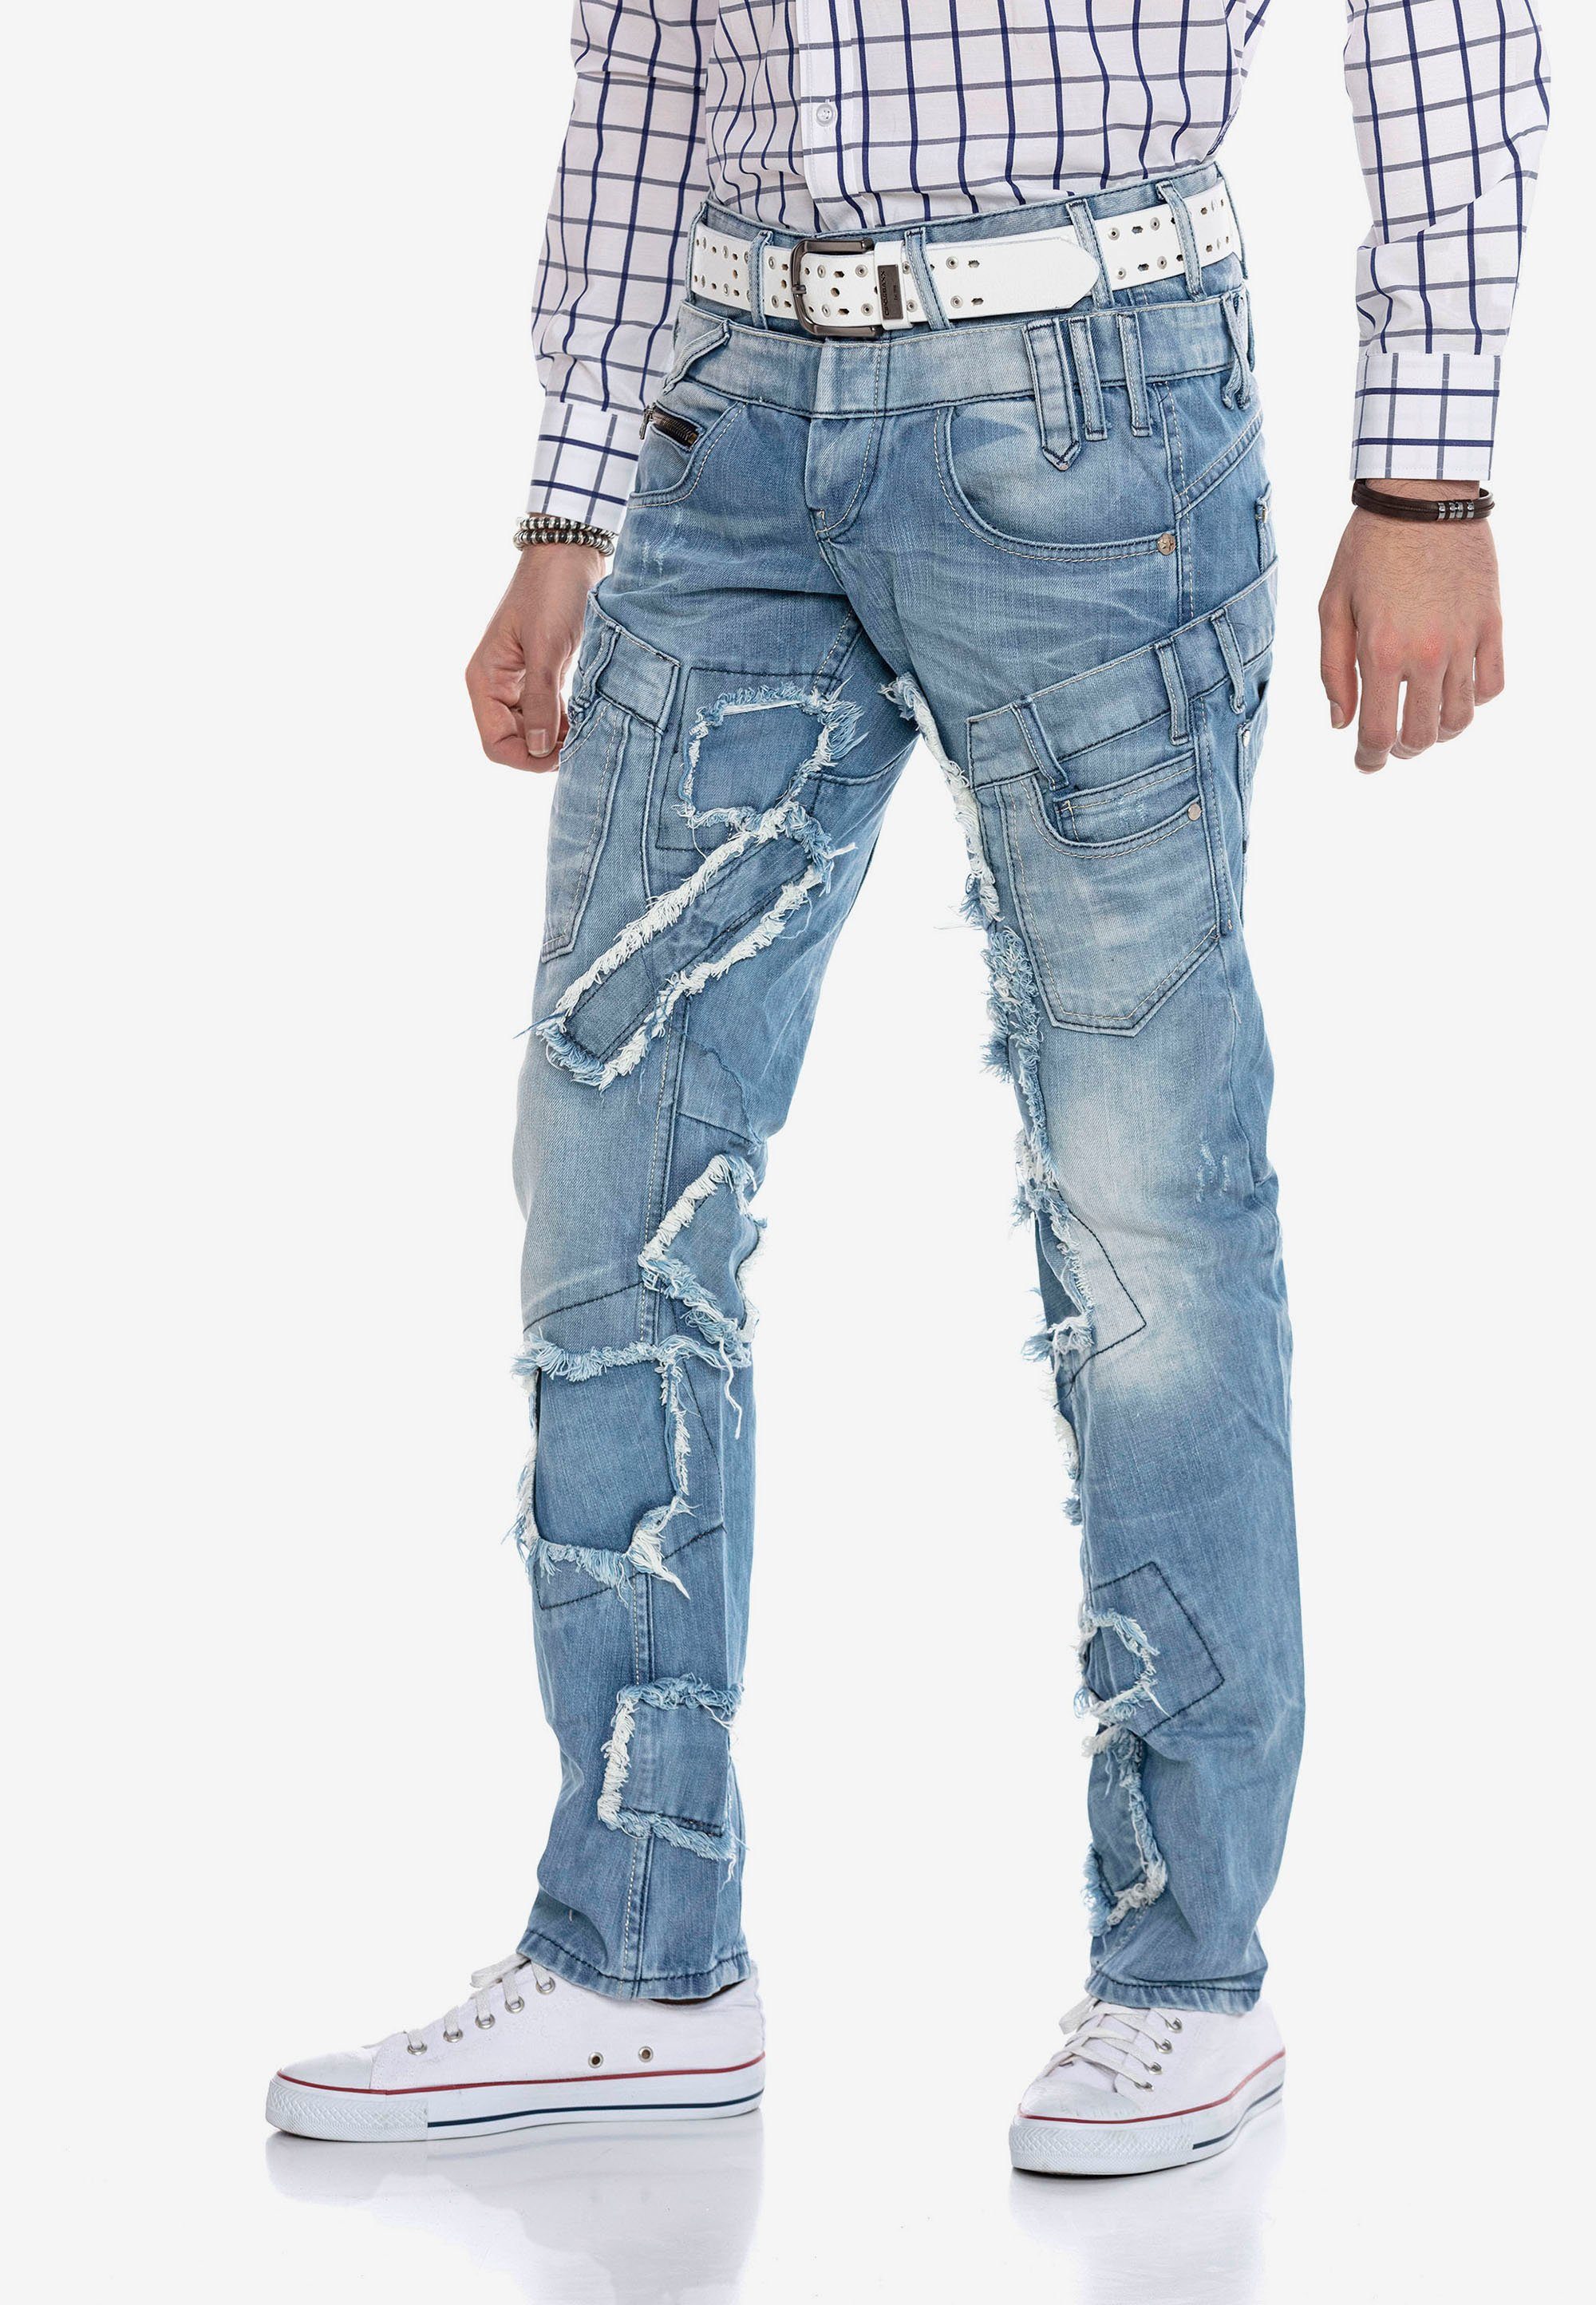 & Patchwork-Design Jeans Cipo im Baxx trendigen Bequeme